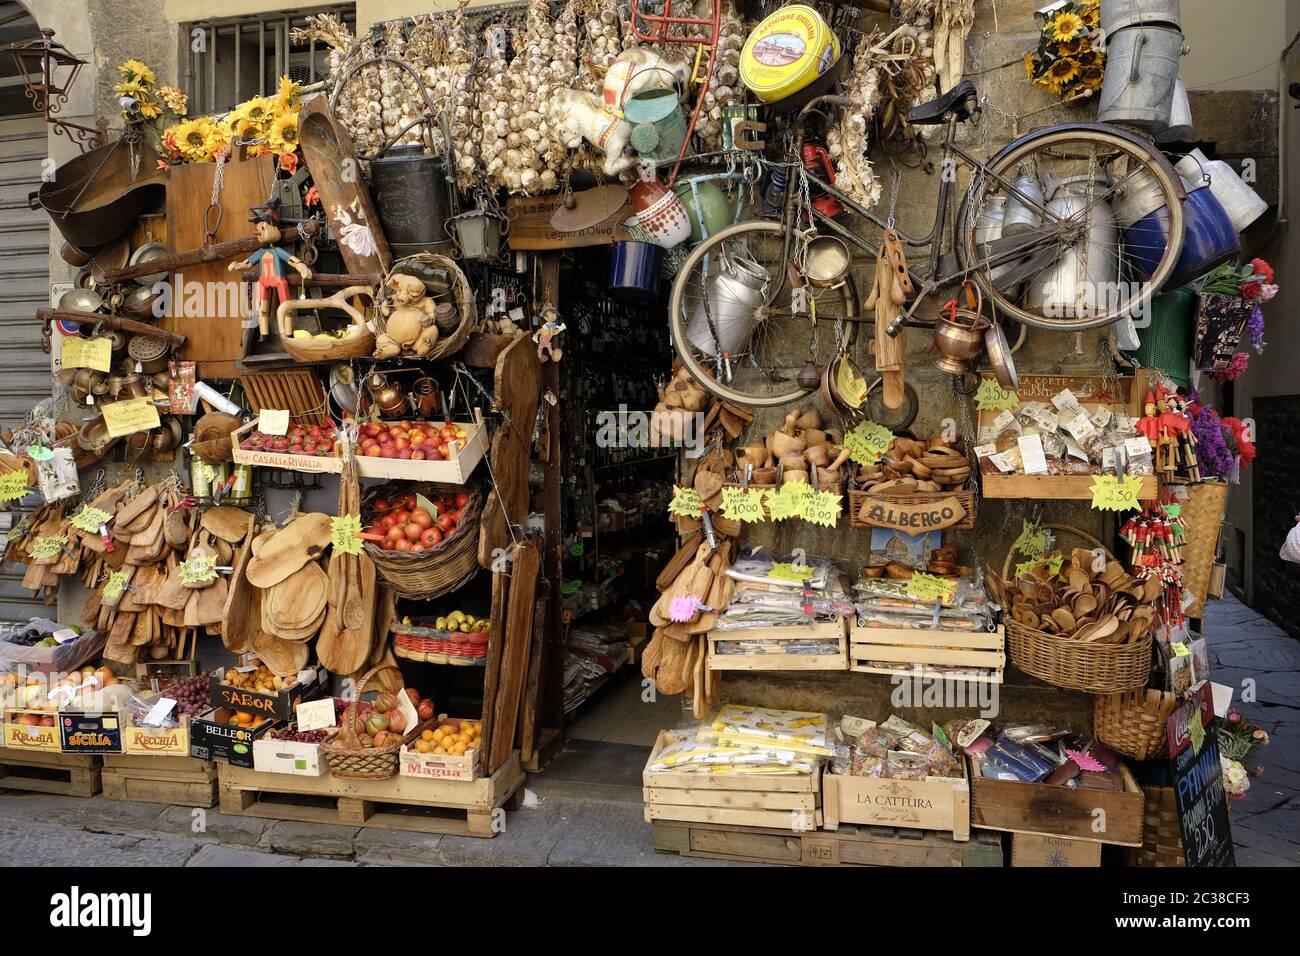 Tienda con mucho carácter que muestra frutas, verduras y artesanías en una calle lateral de Florencia cerca del Arno. Foto de stock